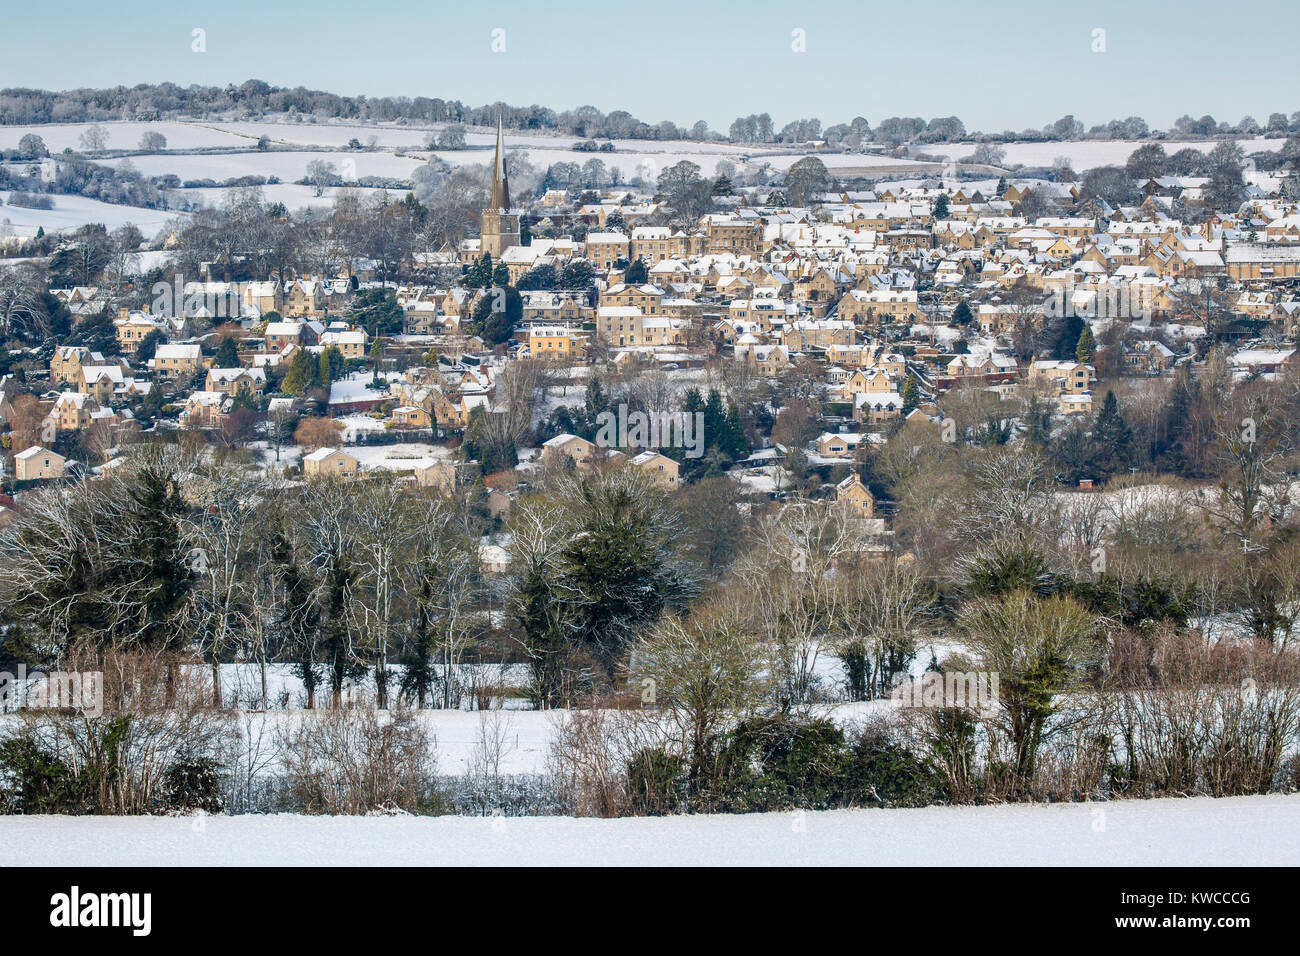 Le pittoresque village de Painswick dans les Cotswolds après une chute de neige, Gloucestershire, Royaume-Uni Banque D'Images